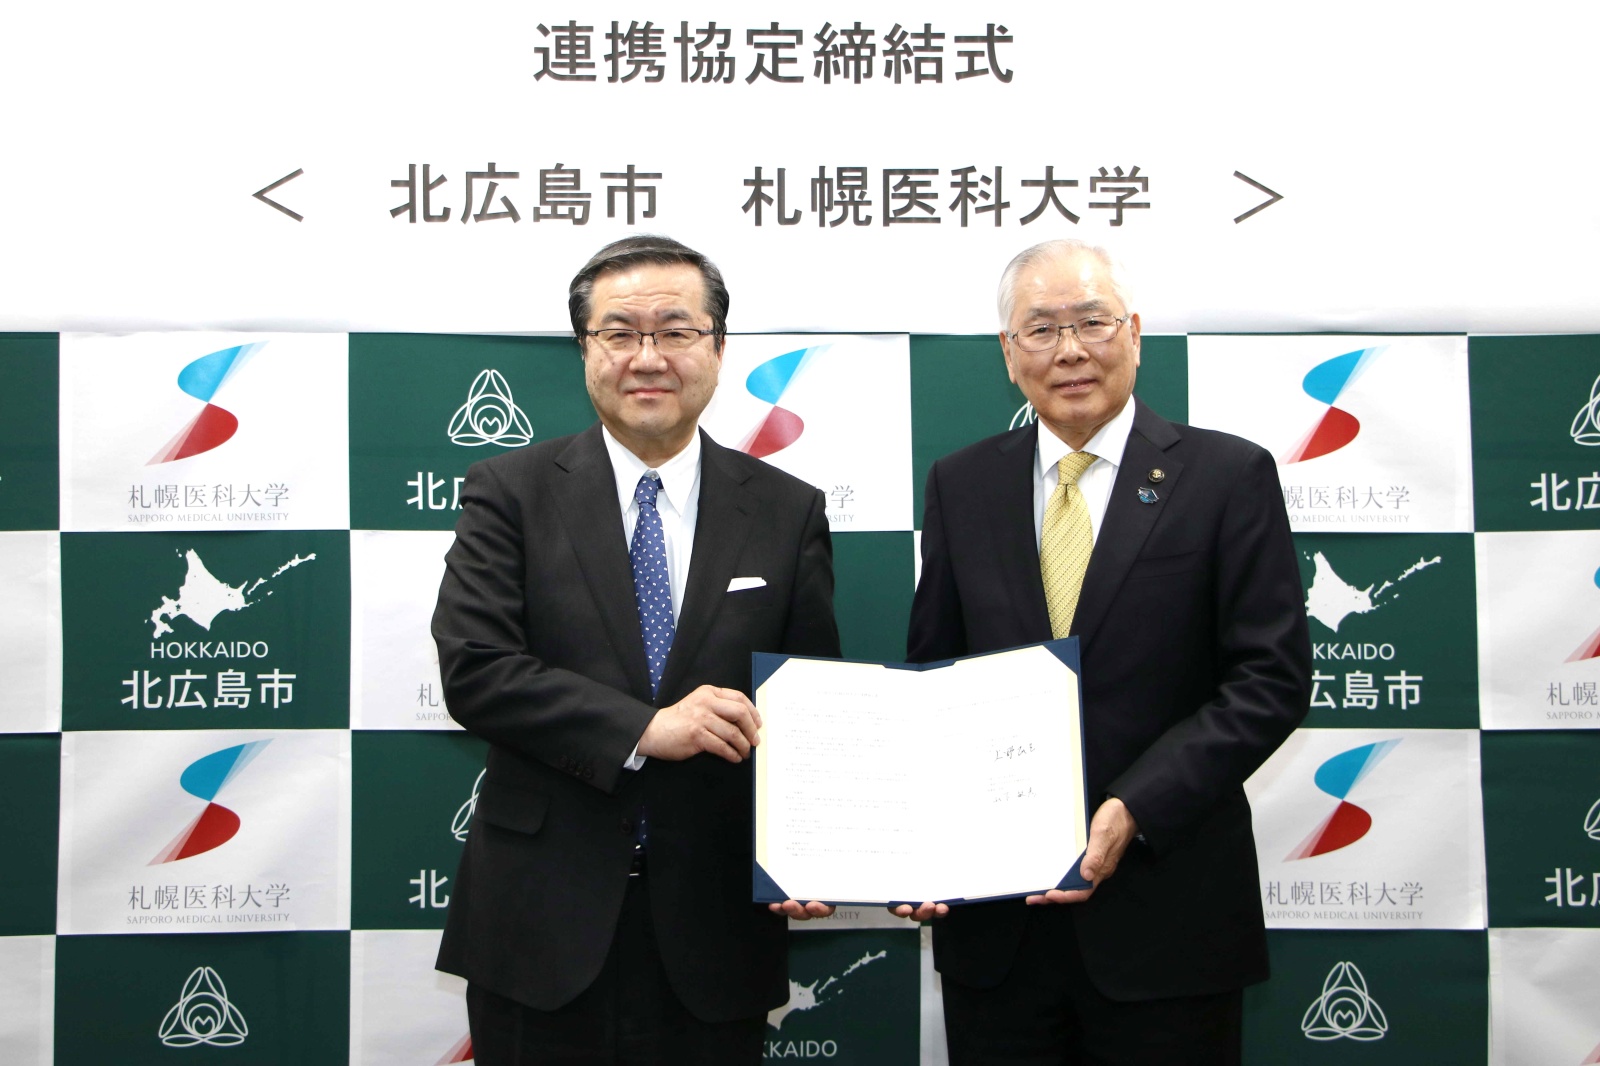 北広島市の上野市長と本学の山下理事長・学長が署名後の協定書を手に持っています。